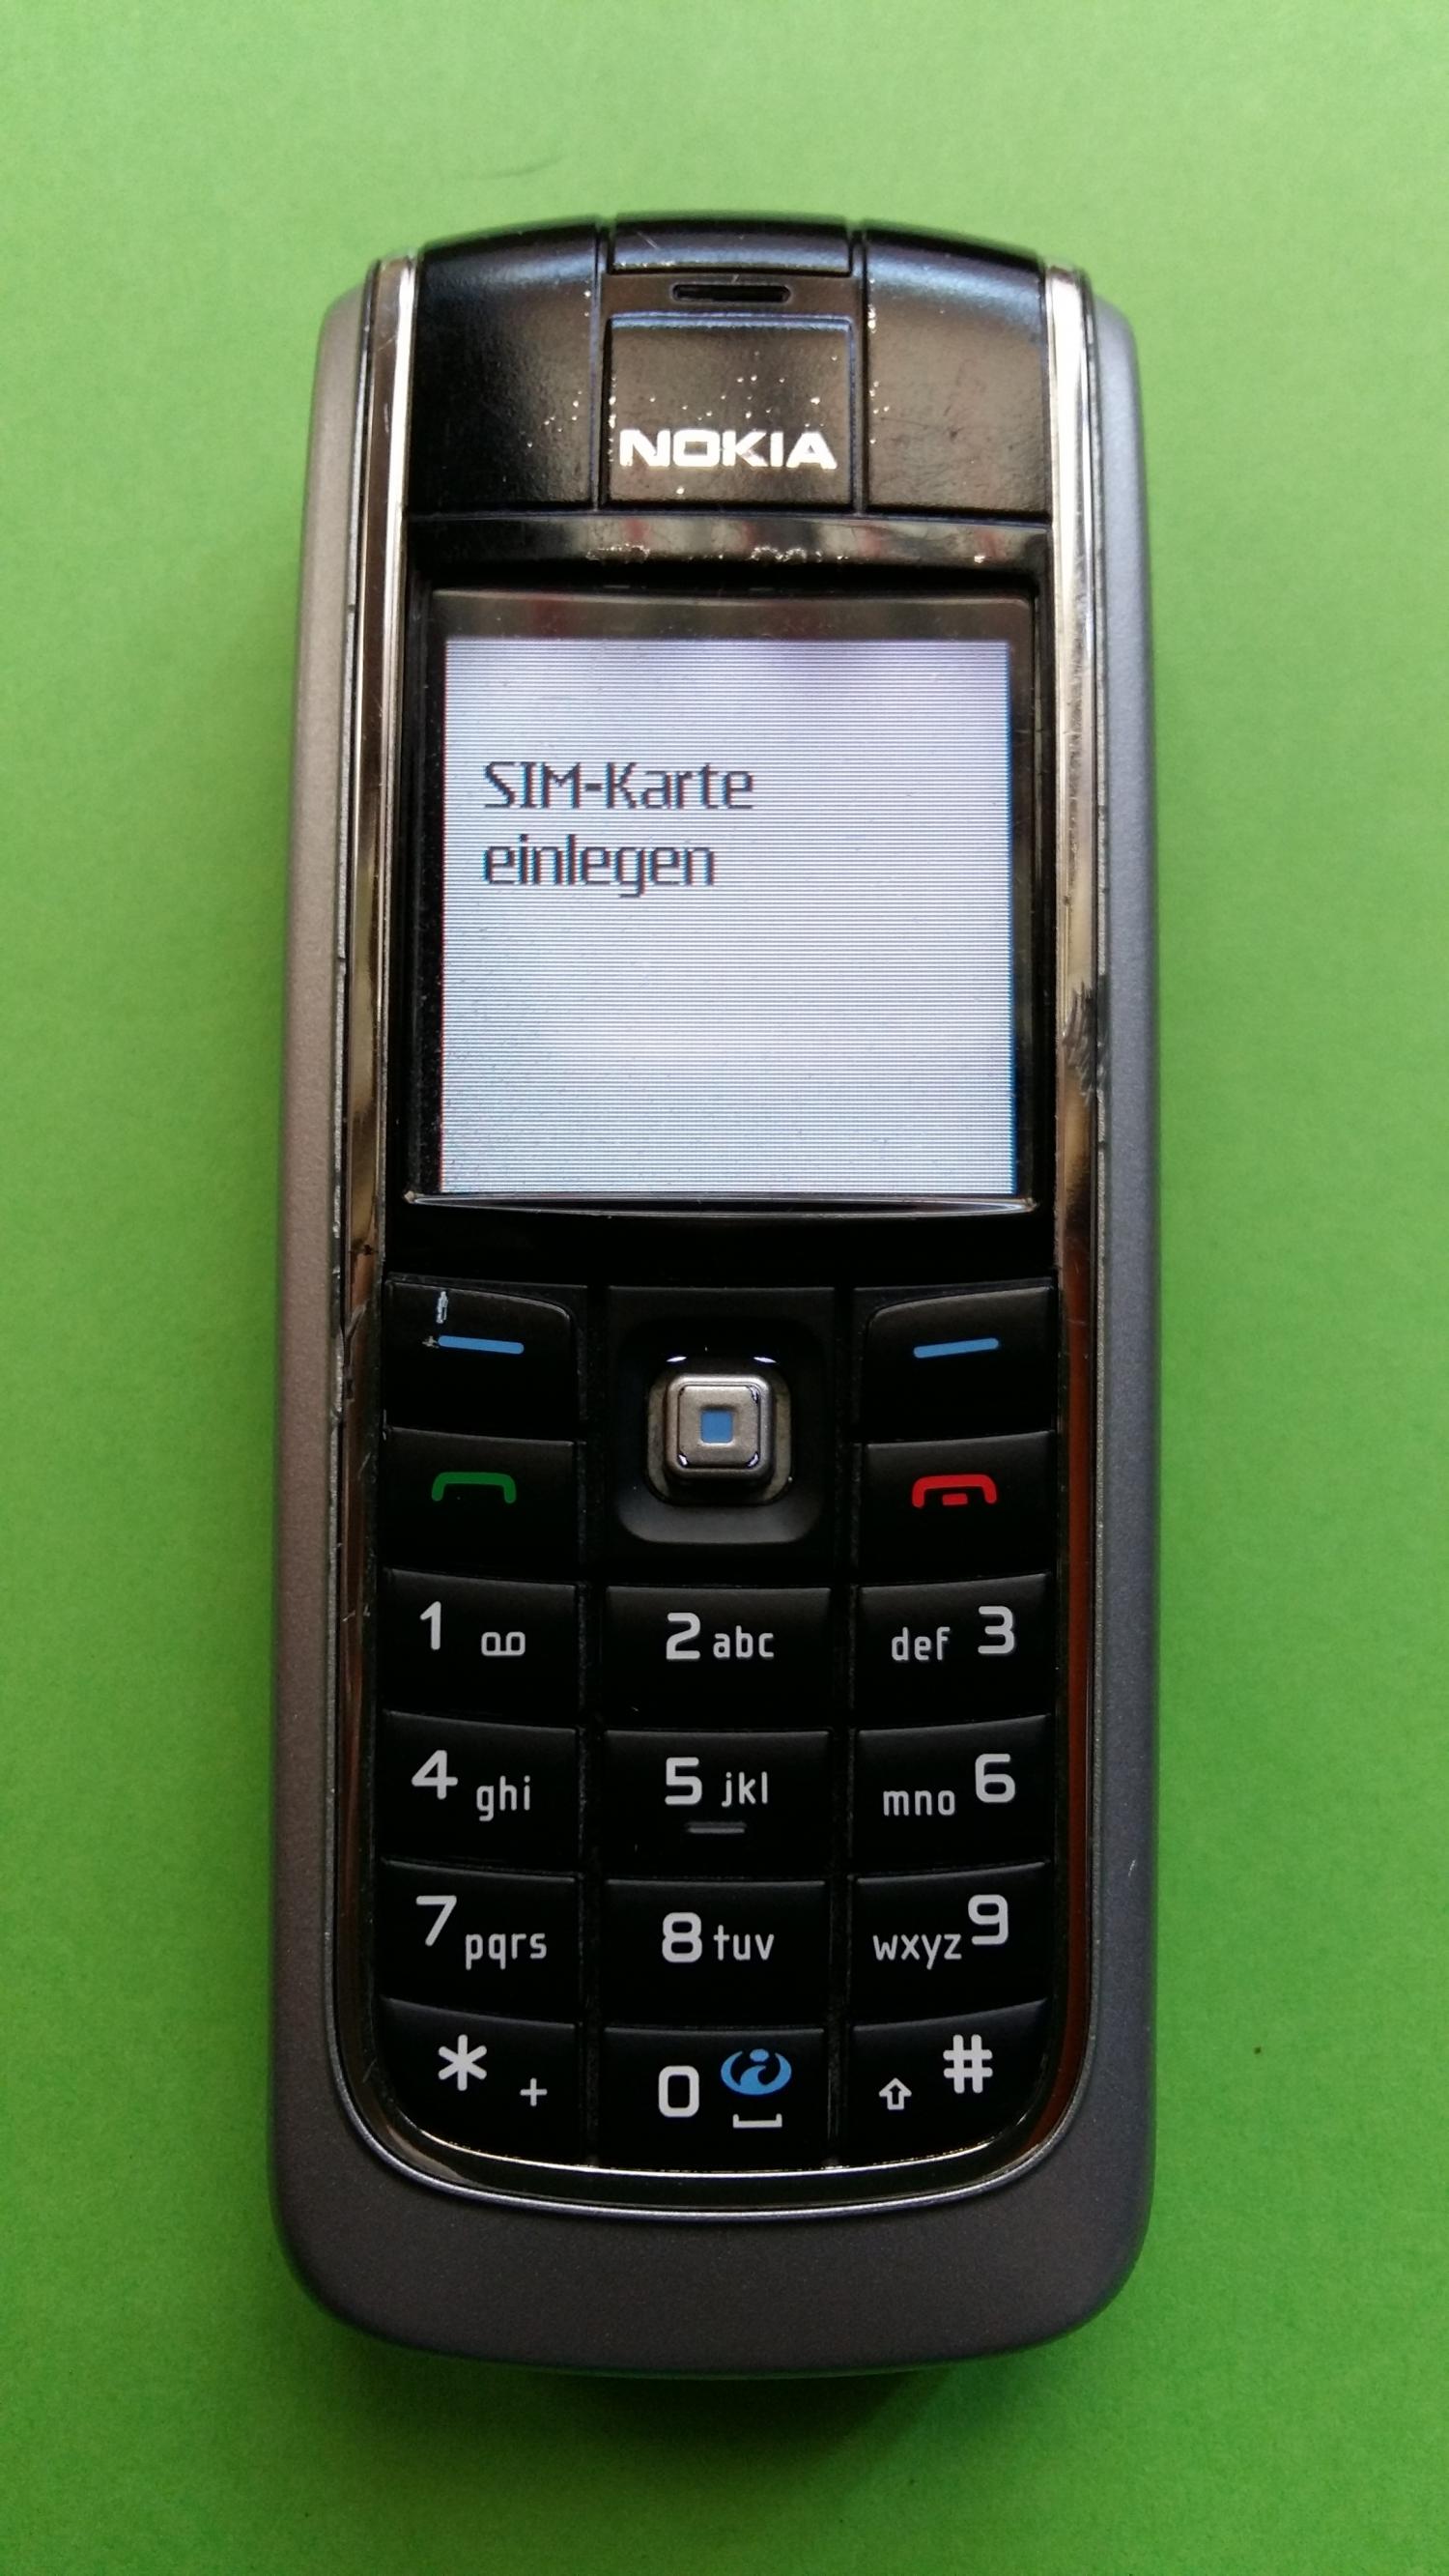 image-7323269-Nokia 6021 (3)1.jpg